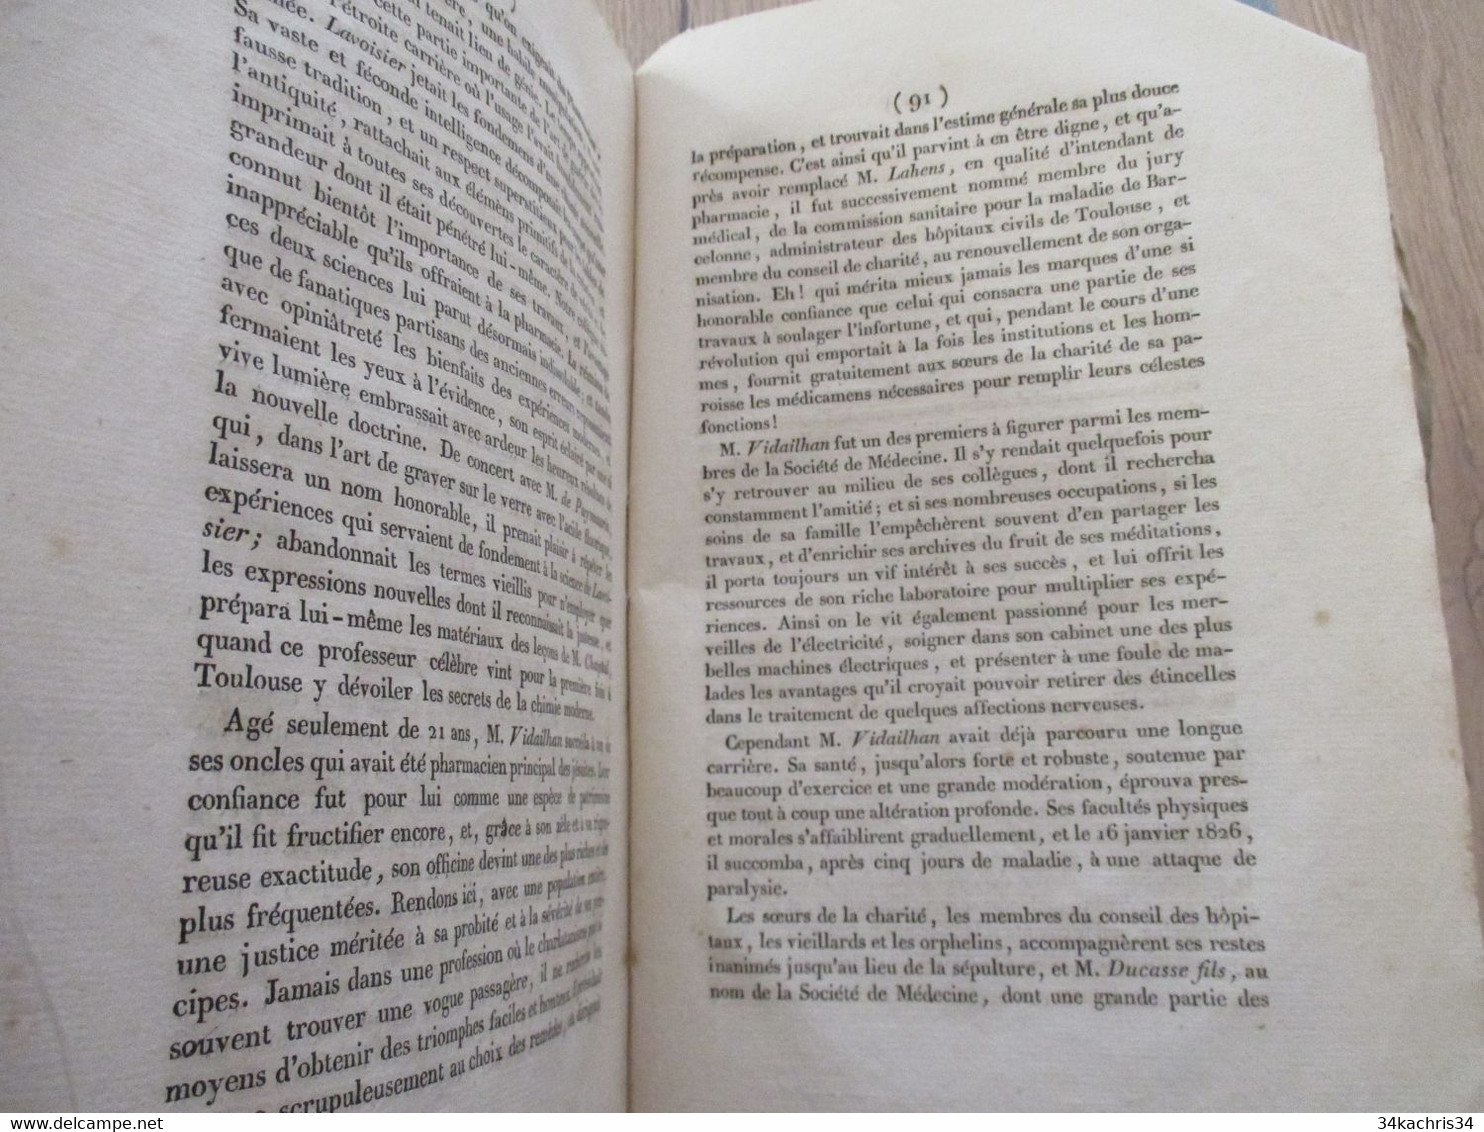 Journal de La société de Médecine de Toulouse 1826 colique Gaillard hernies syphilis....